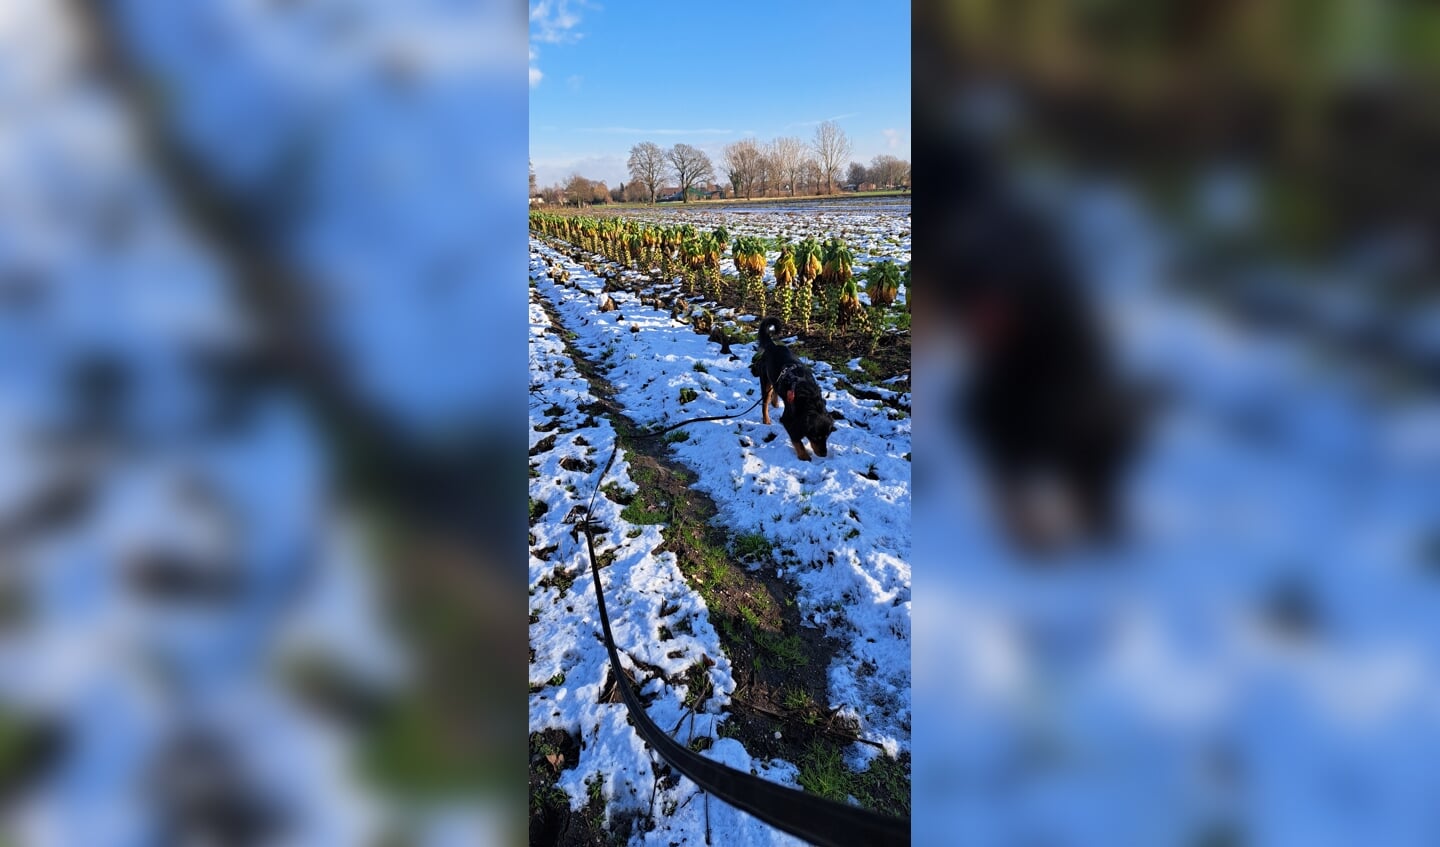 Heerlijk wandelen met de hond Rivka in Nistelrode,  Achter de Hoogbroeksesteeg met sneeuw, zon, boerenkool, en spruitjes op het land.
Genieten van ons prachtige dorp.